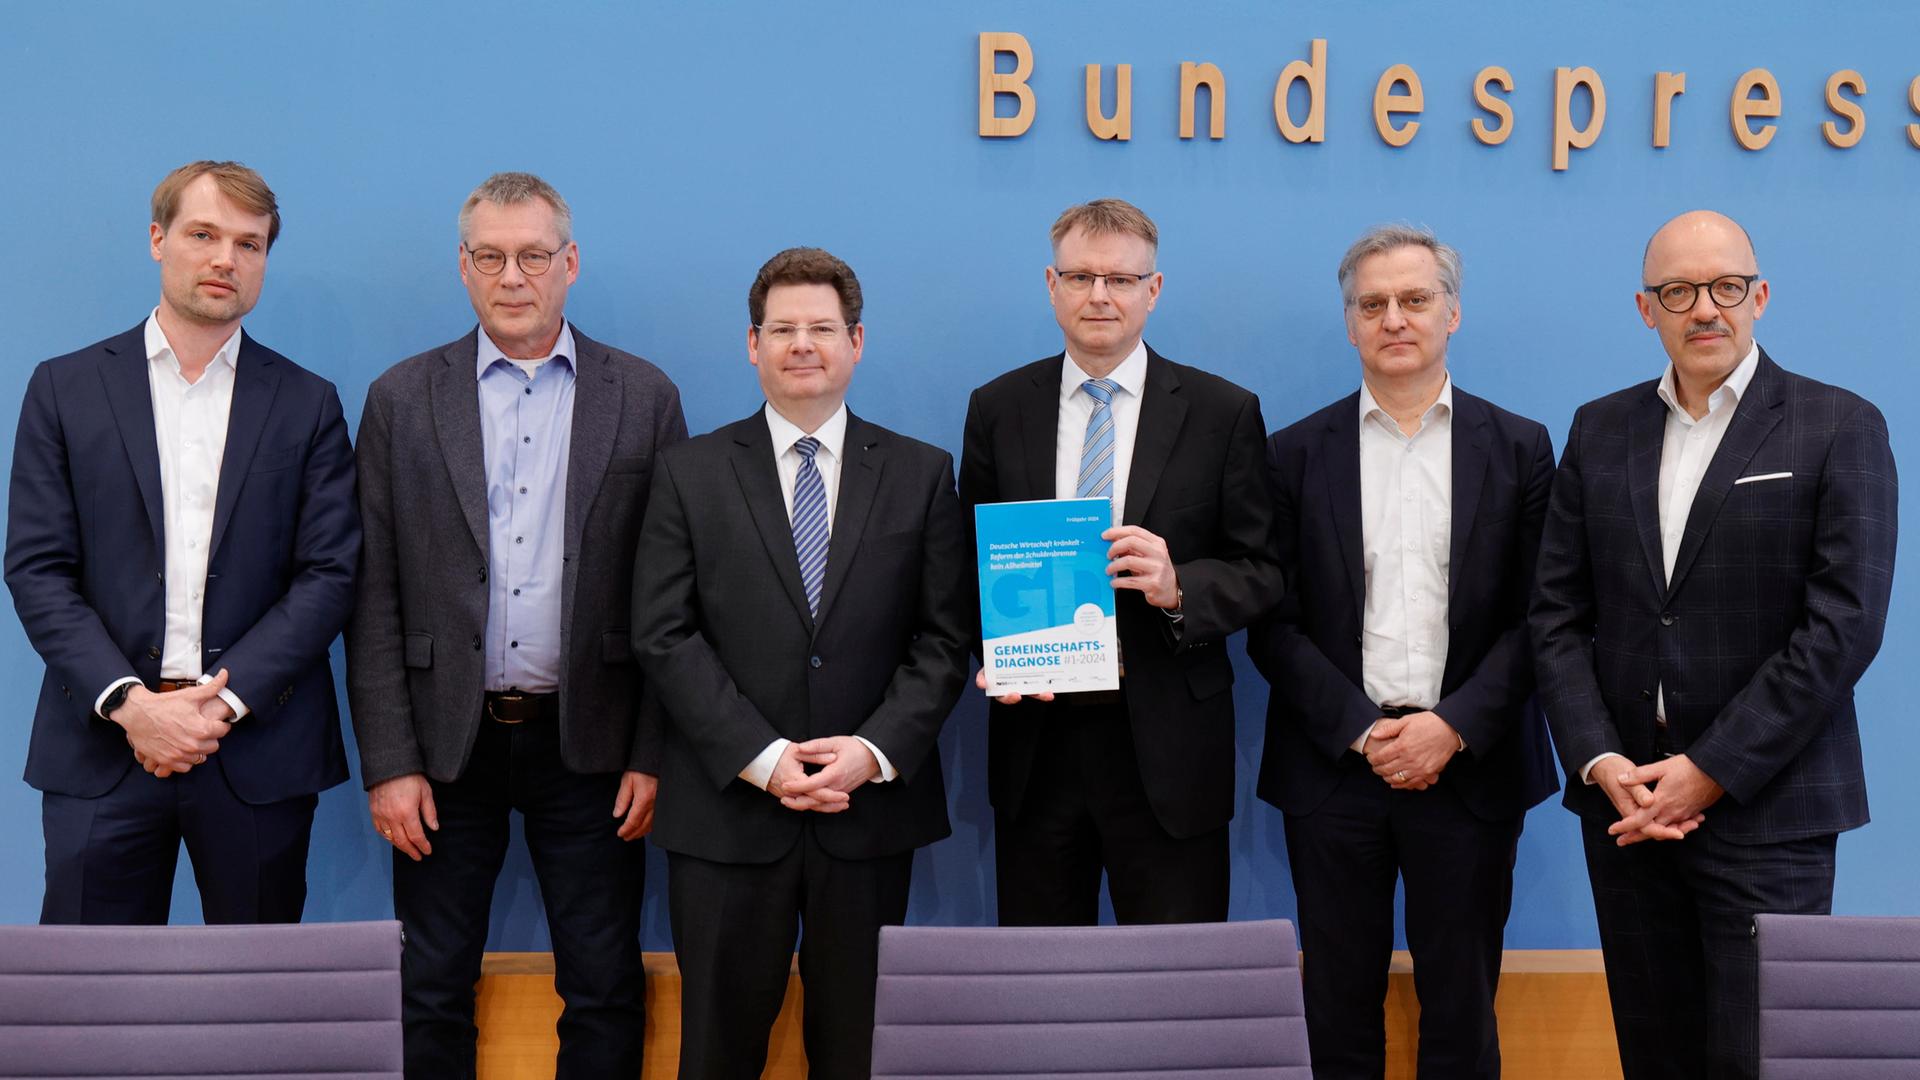 Von links nach rechts stehen die Wirtschaftsforscher Timm Bönke, Klaus-Jürgen Gern, Oliver Holtemöller, Stefan Kooths, Torsten Schmidt sowie Timo Wollmershäuser und präsentieren ihre Gemeinschaftsdiagnose.